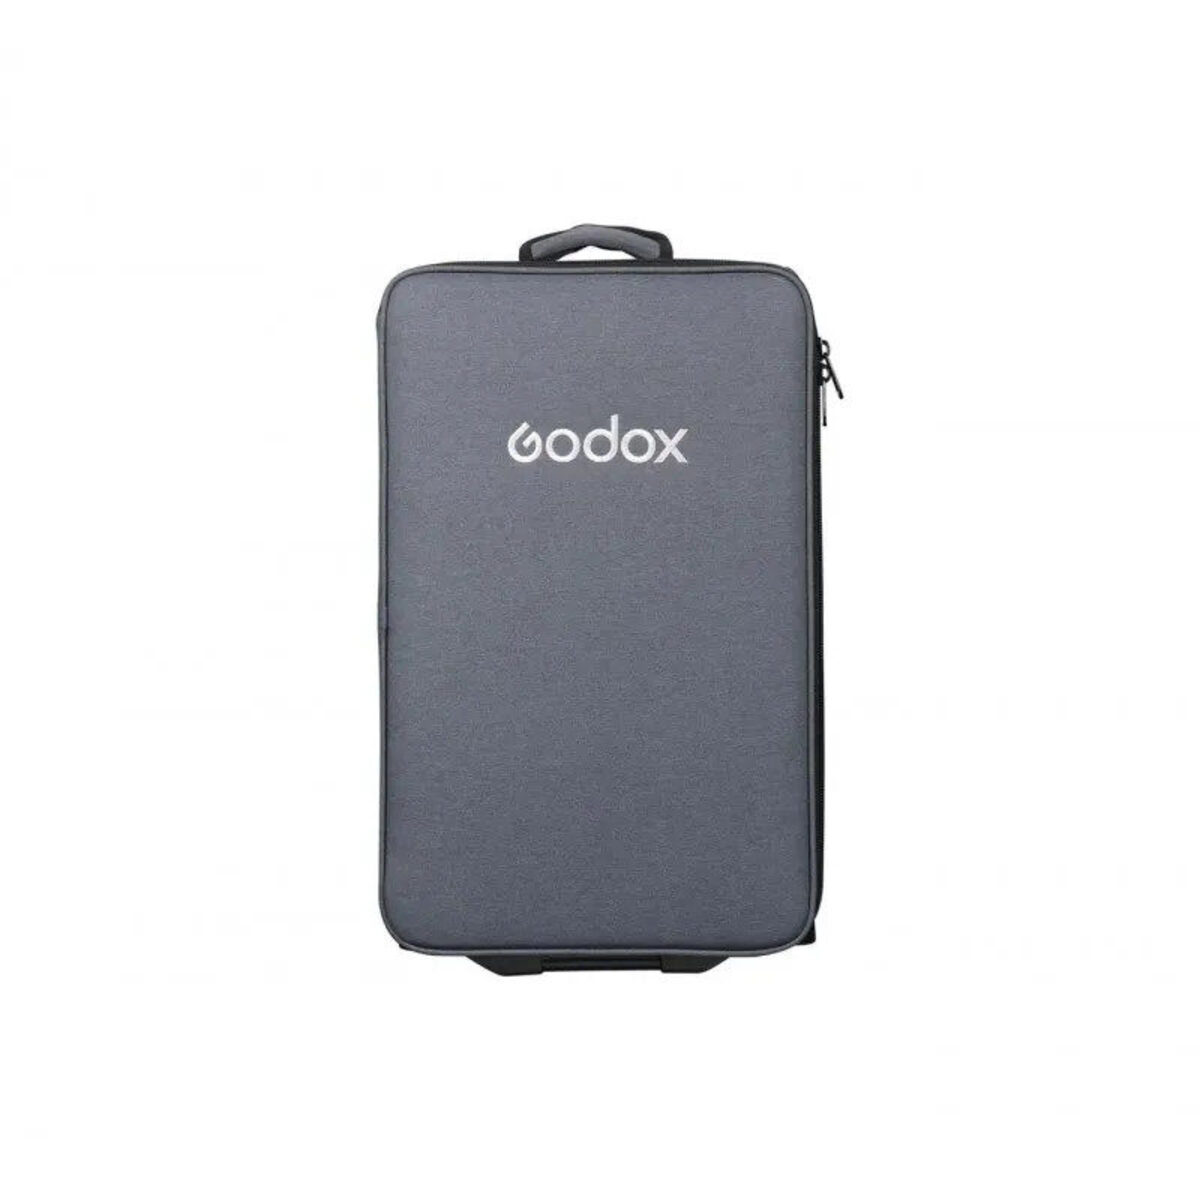 Godox CB34 (Carry Bag for M600D)